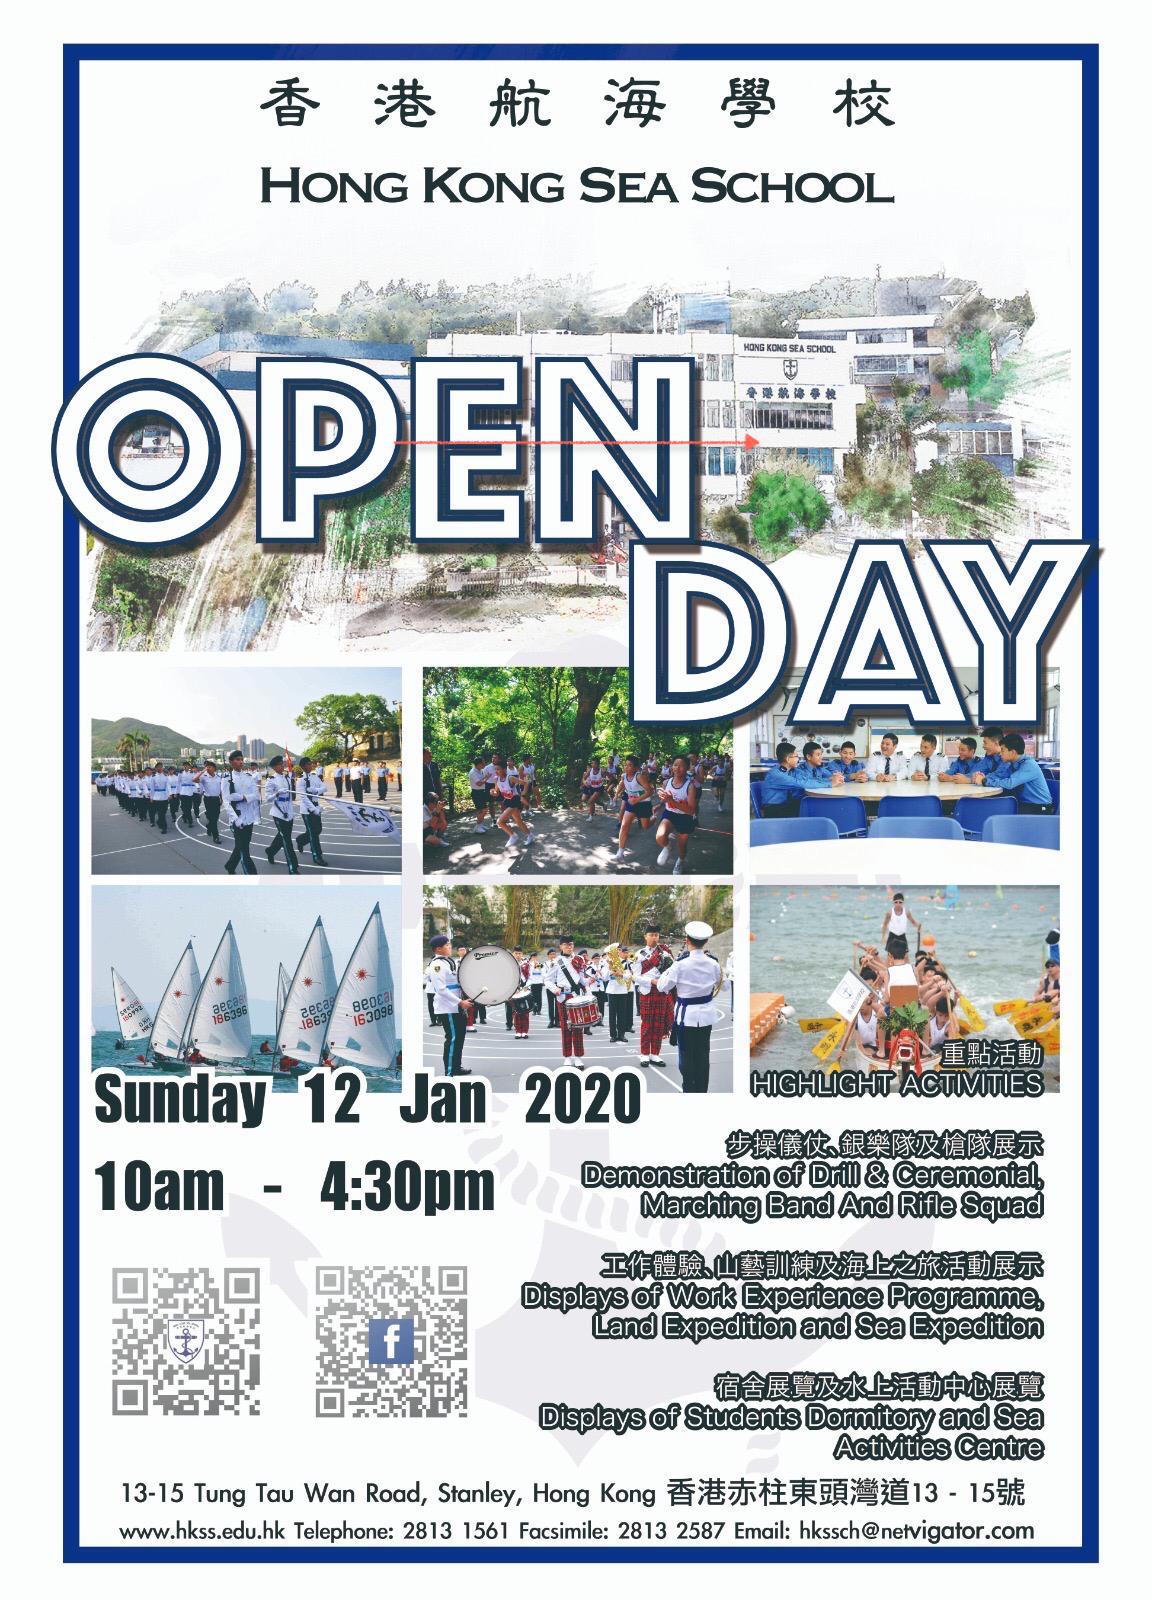 香港航海學校 開放日